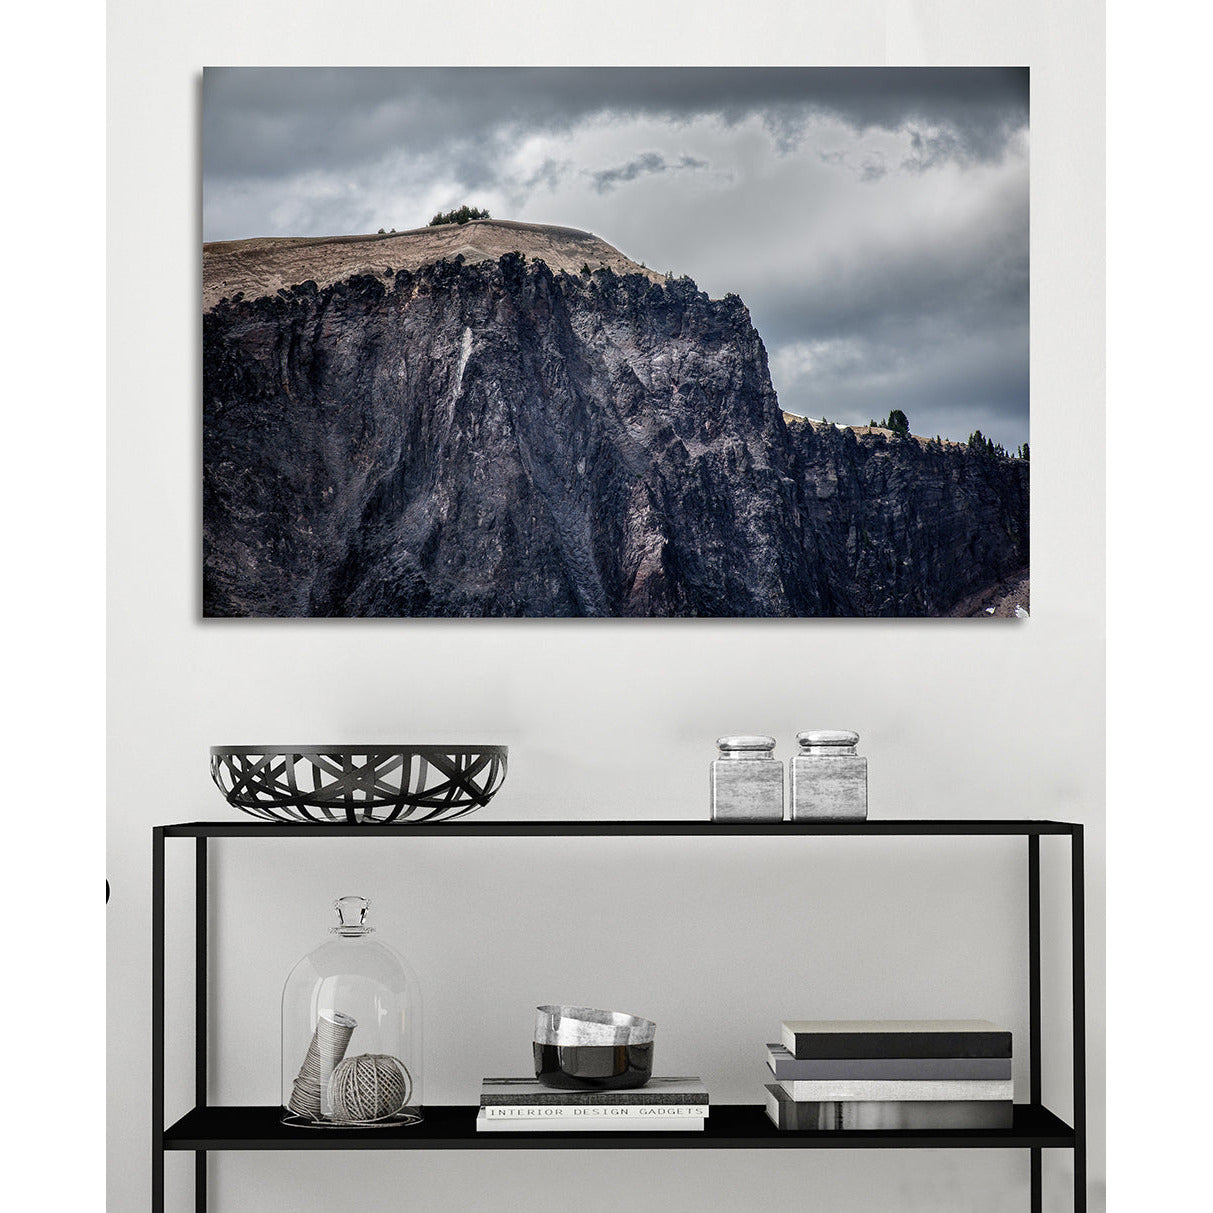 Das Bild zeigt ein Aluminiumbild in einem edlen Zimmer mit einem Berg als Motiv.